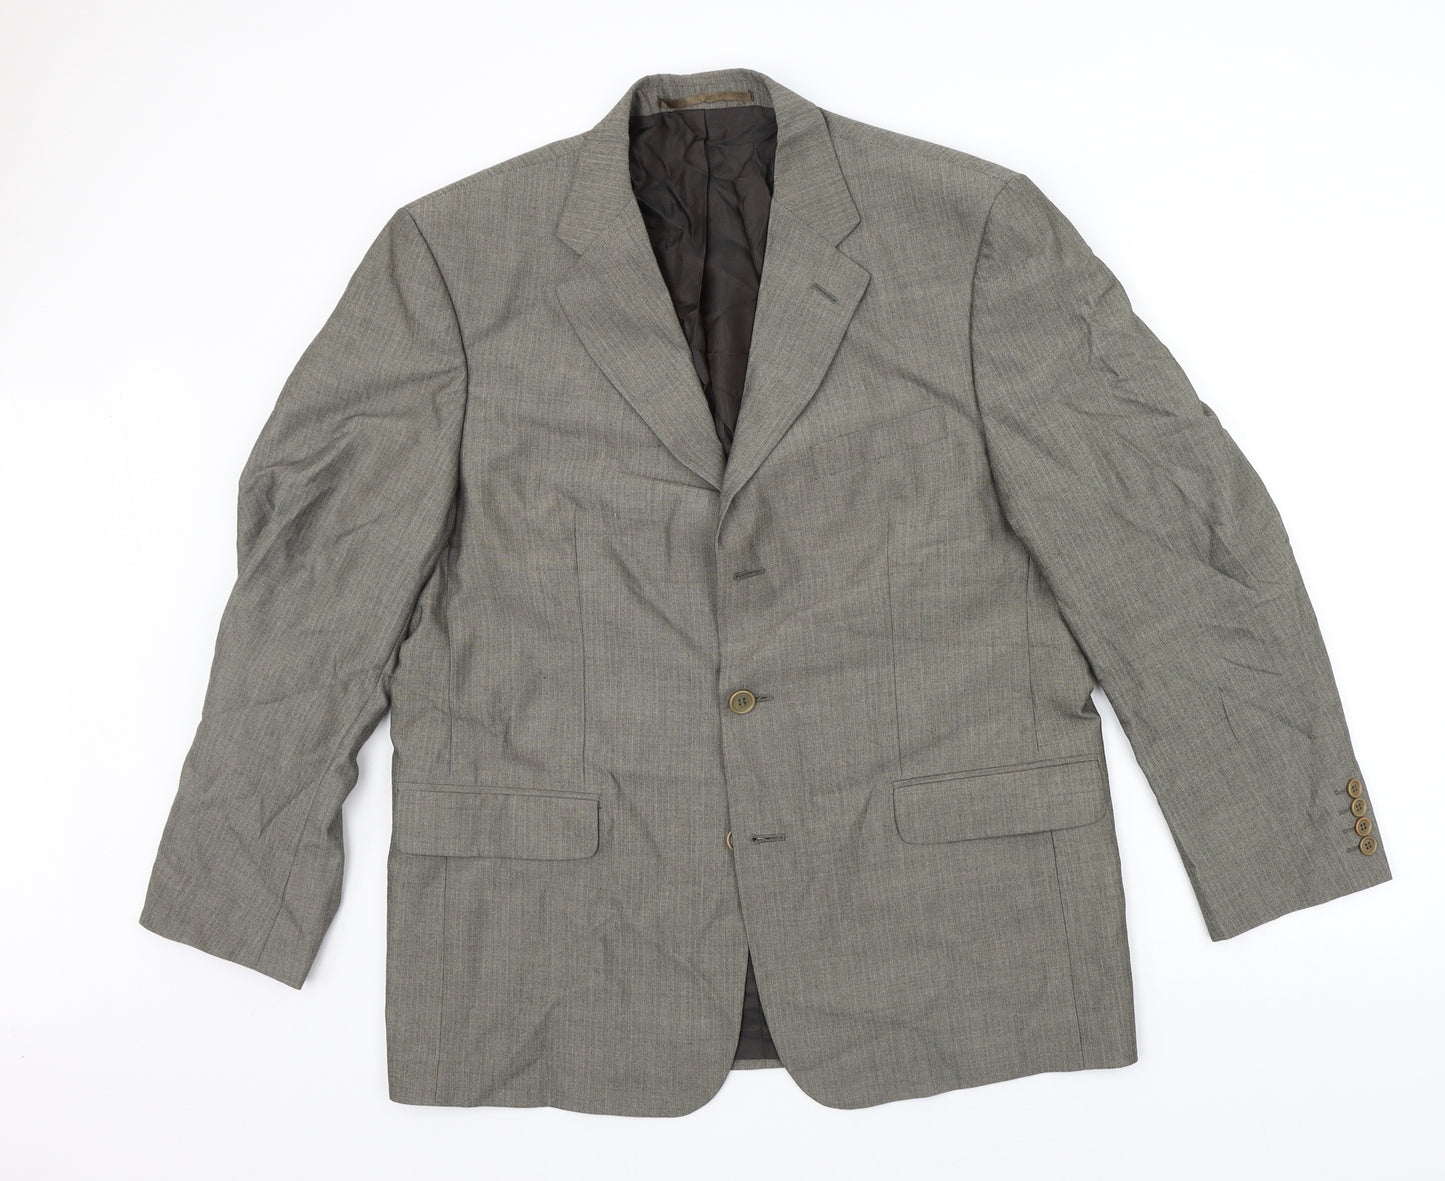 West Brook Mens Grey   Jacket Suit Jacket Size L